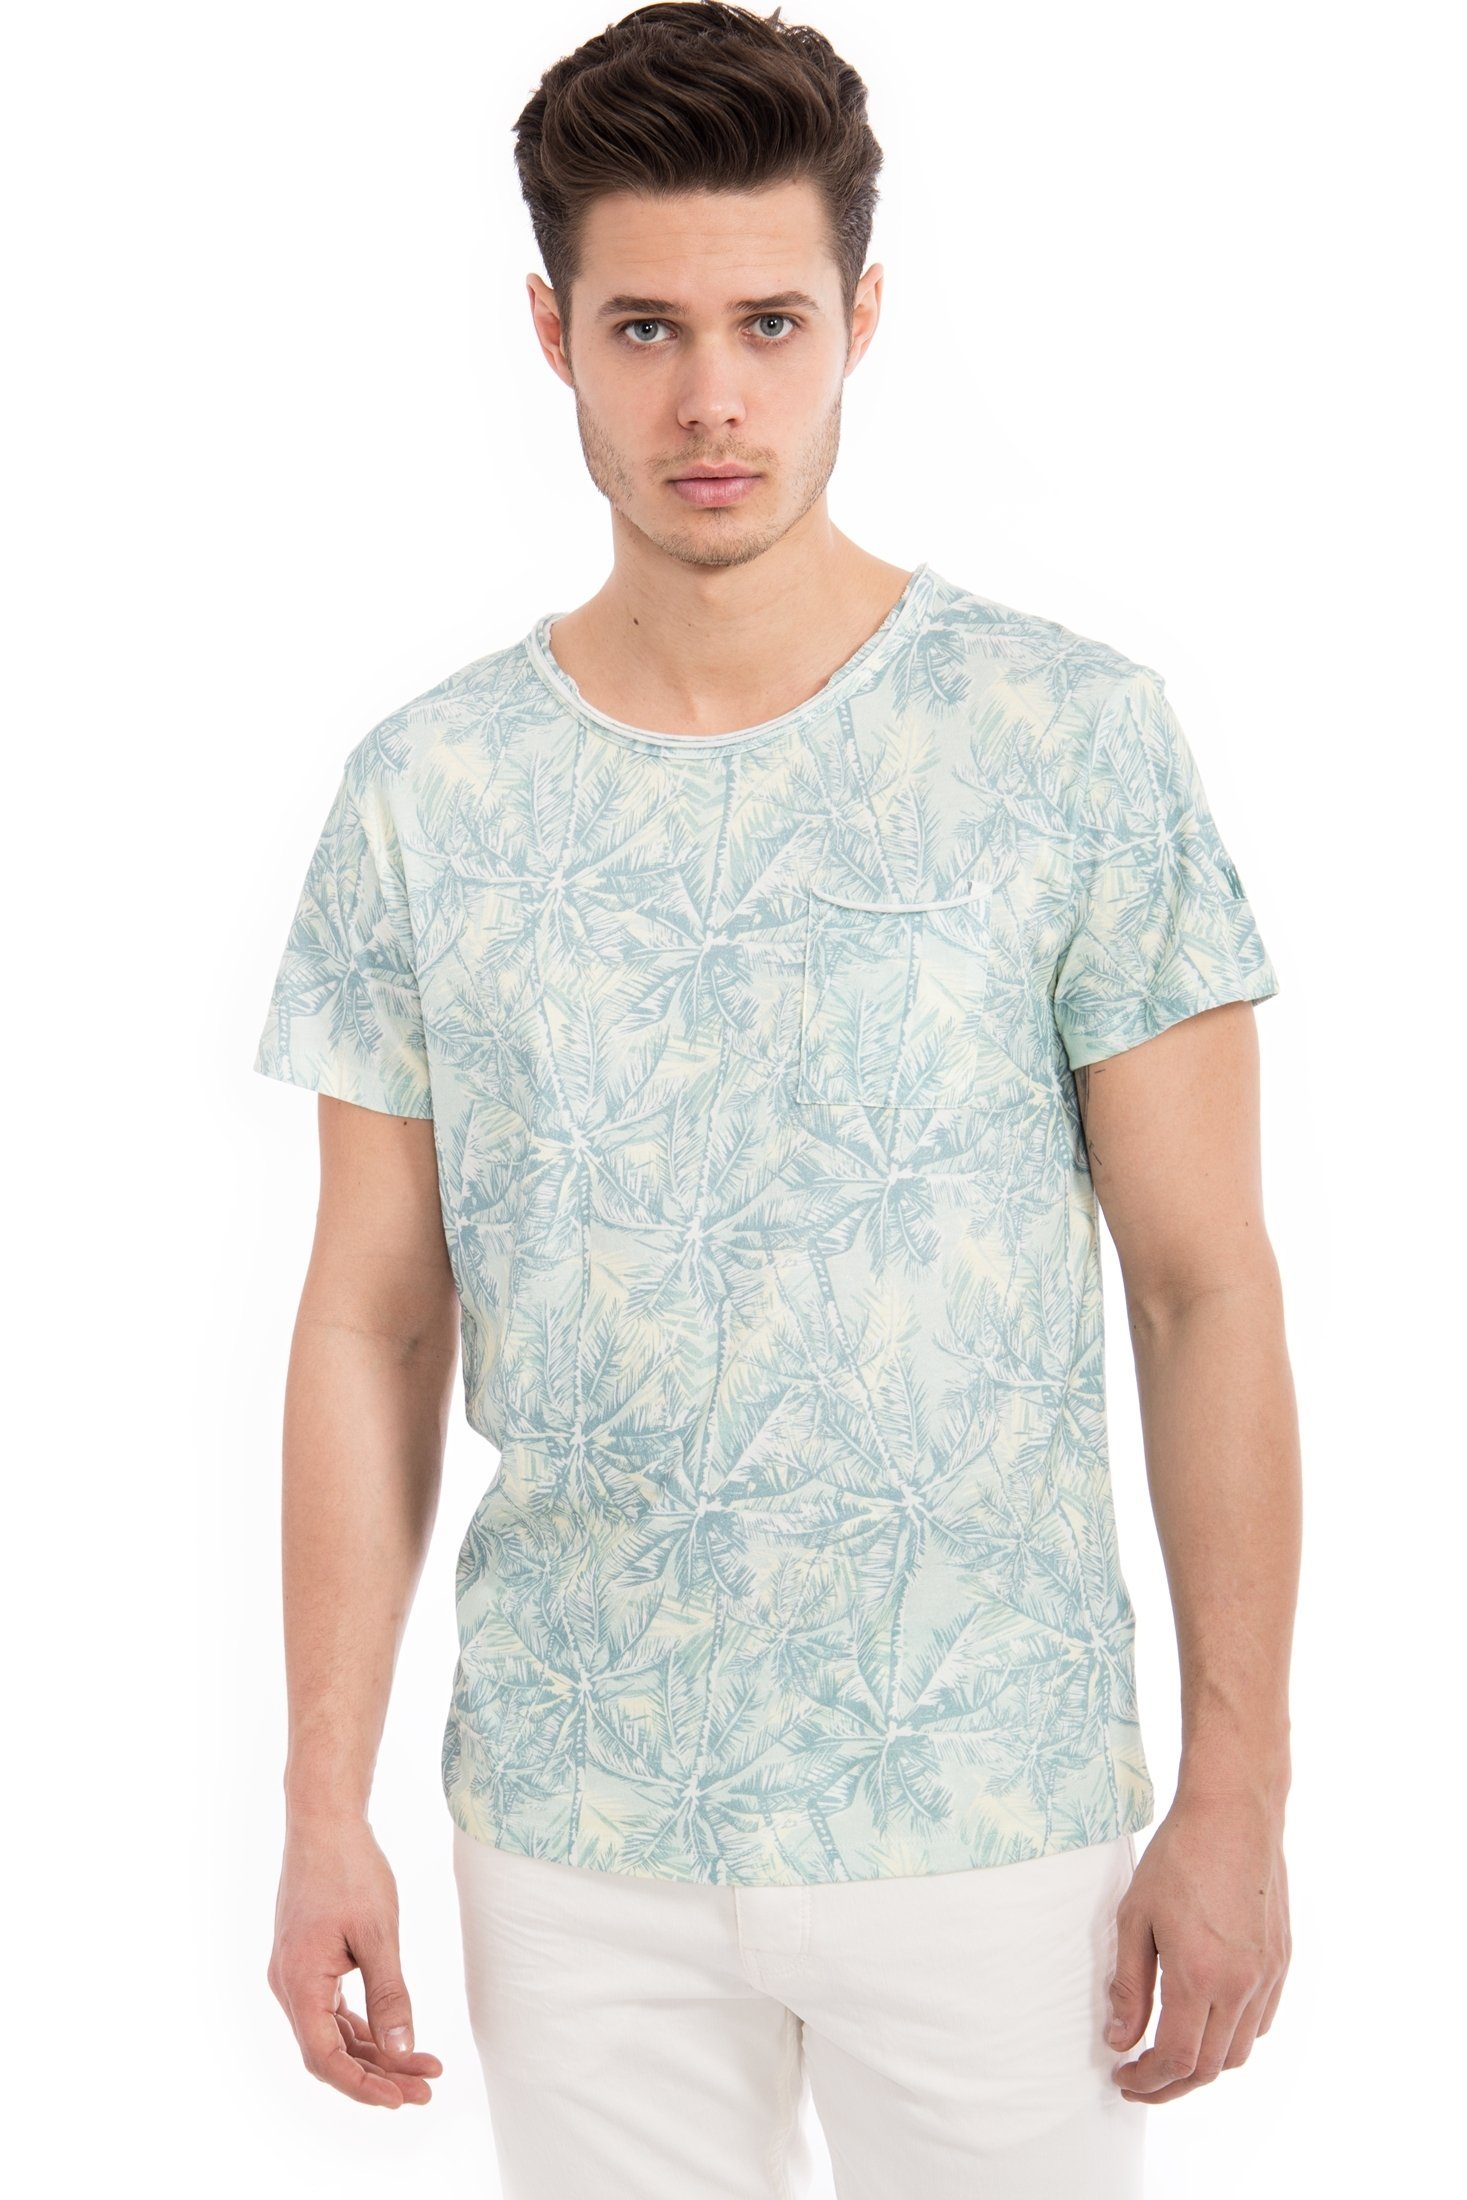 Günstiger Versand im Ausland! Way of Glory T-Shirt Print Tropical Tasche grün &